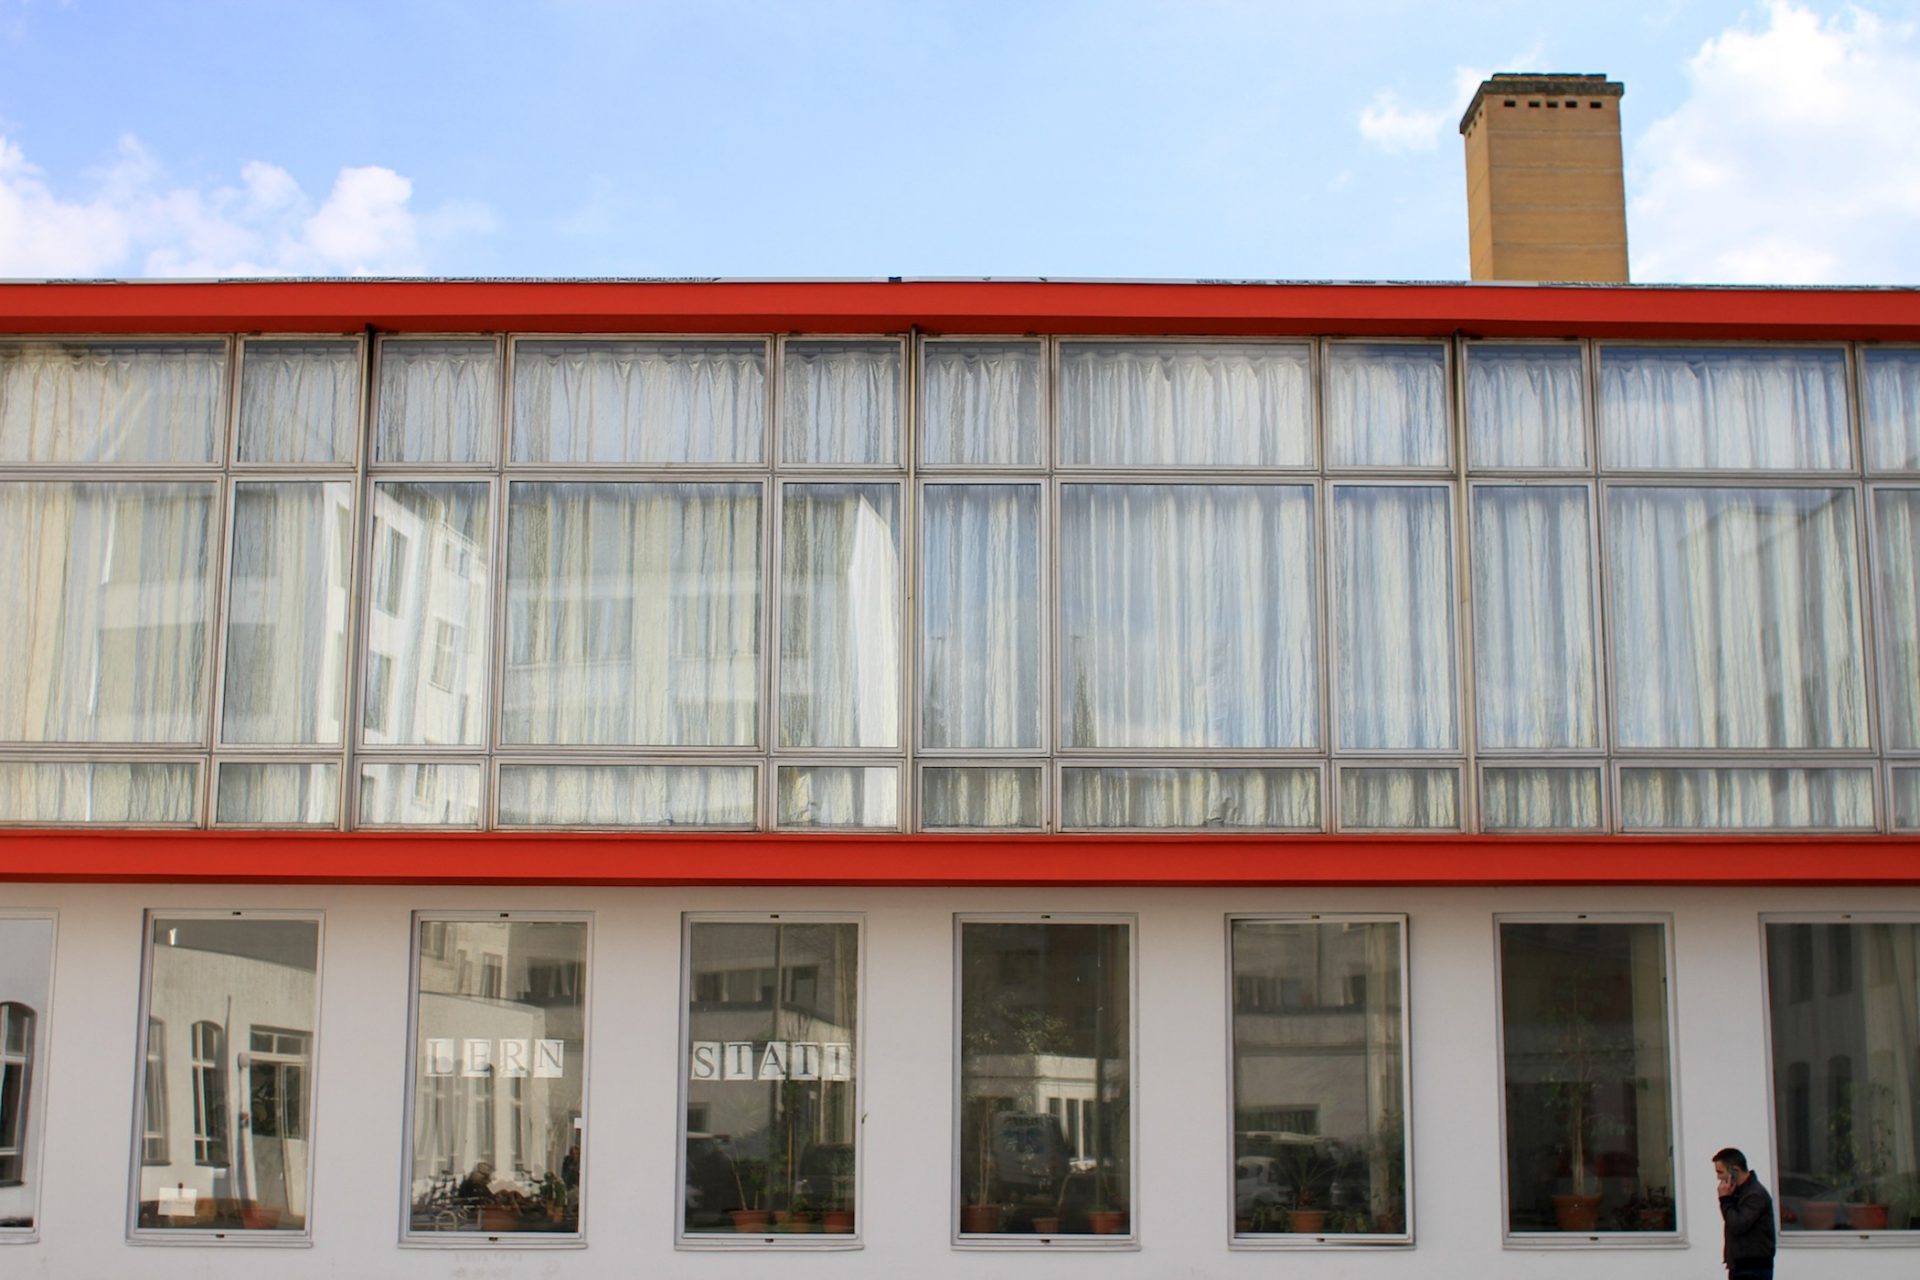 Der Projektraum. Der erste architektonische Eingriff von Klaus Kirsten bei den Neubauten des Rotaprint-Geländes: das gläserne Zentrum der Firma. Die umlaufende rote Rahmung der Glaskiste entsprach der Farbgebung des Firmenlogos.